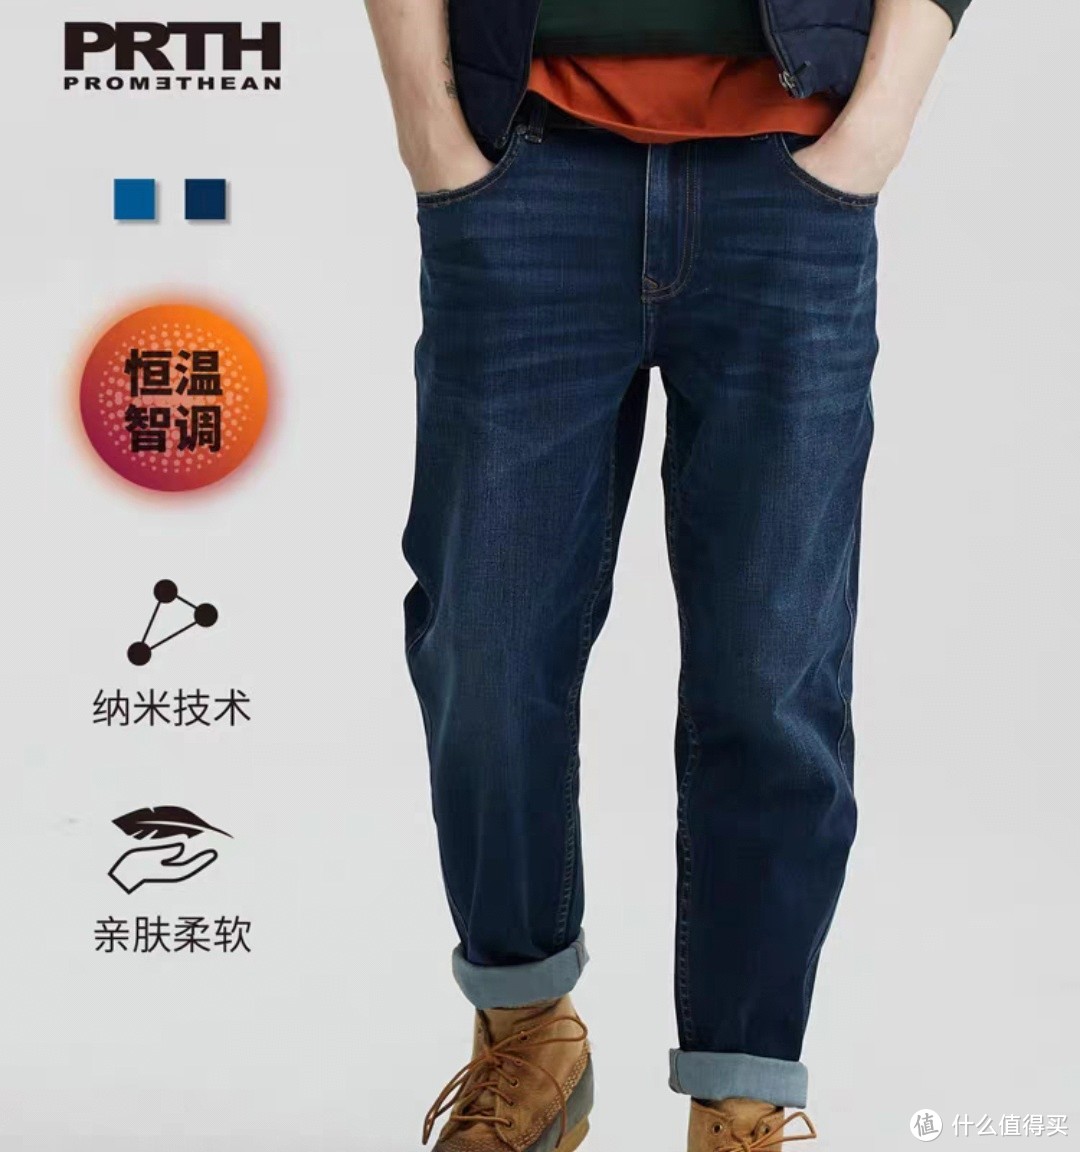 国际服装巨头的牛仔裤国内代工商，版型类似，可以去看看的，双十一蹲一波